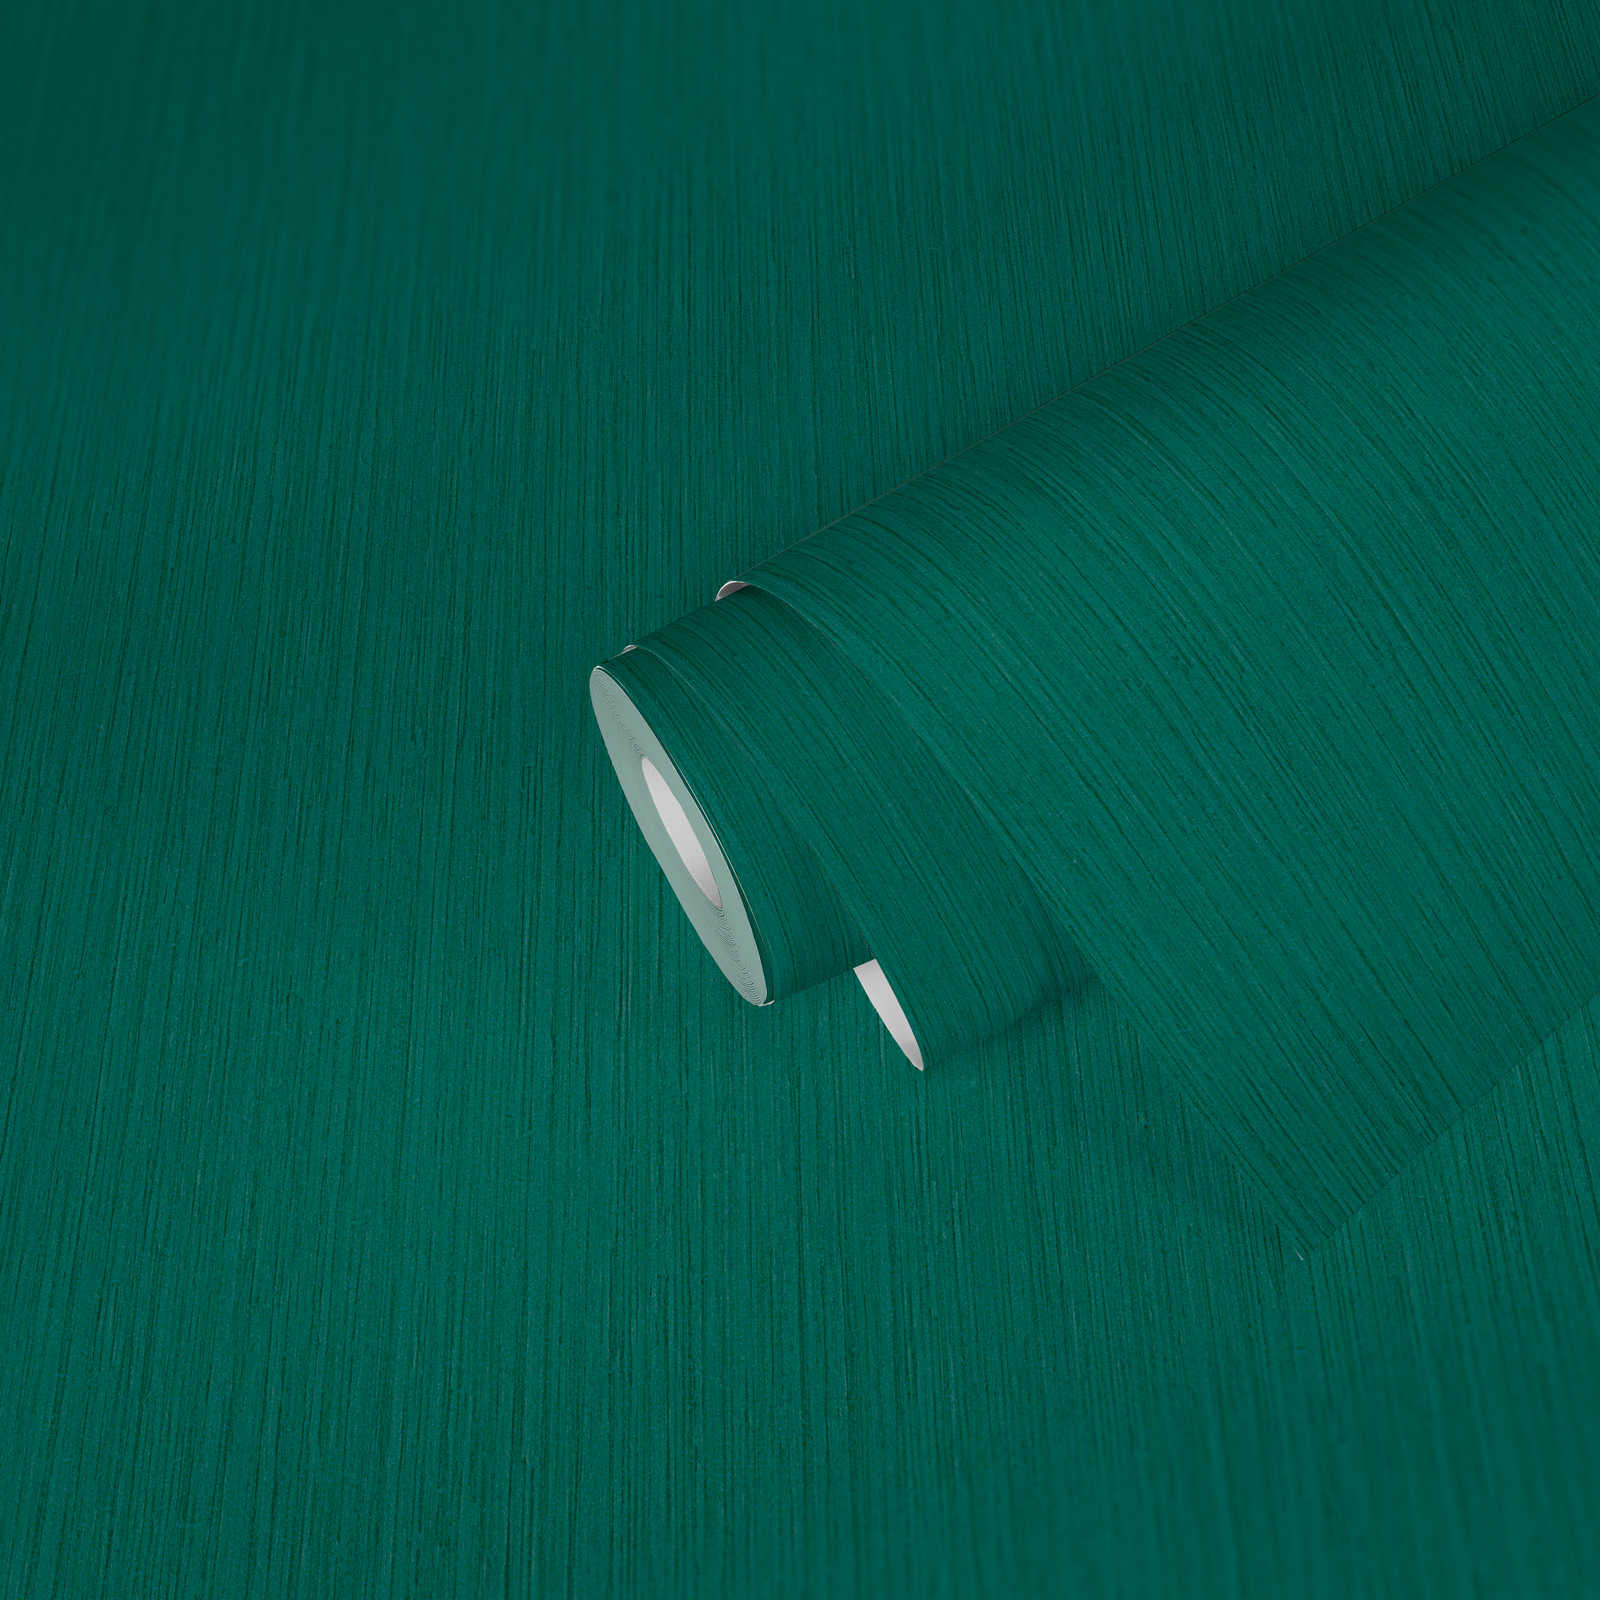             Dark green wallpaper non-woven mottled colour plain
        